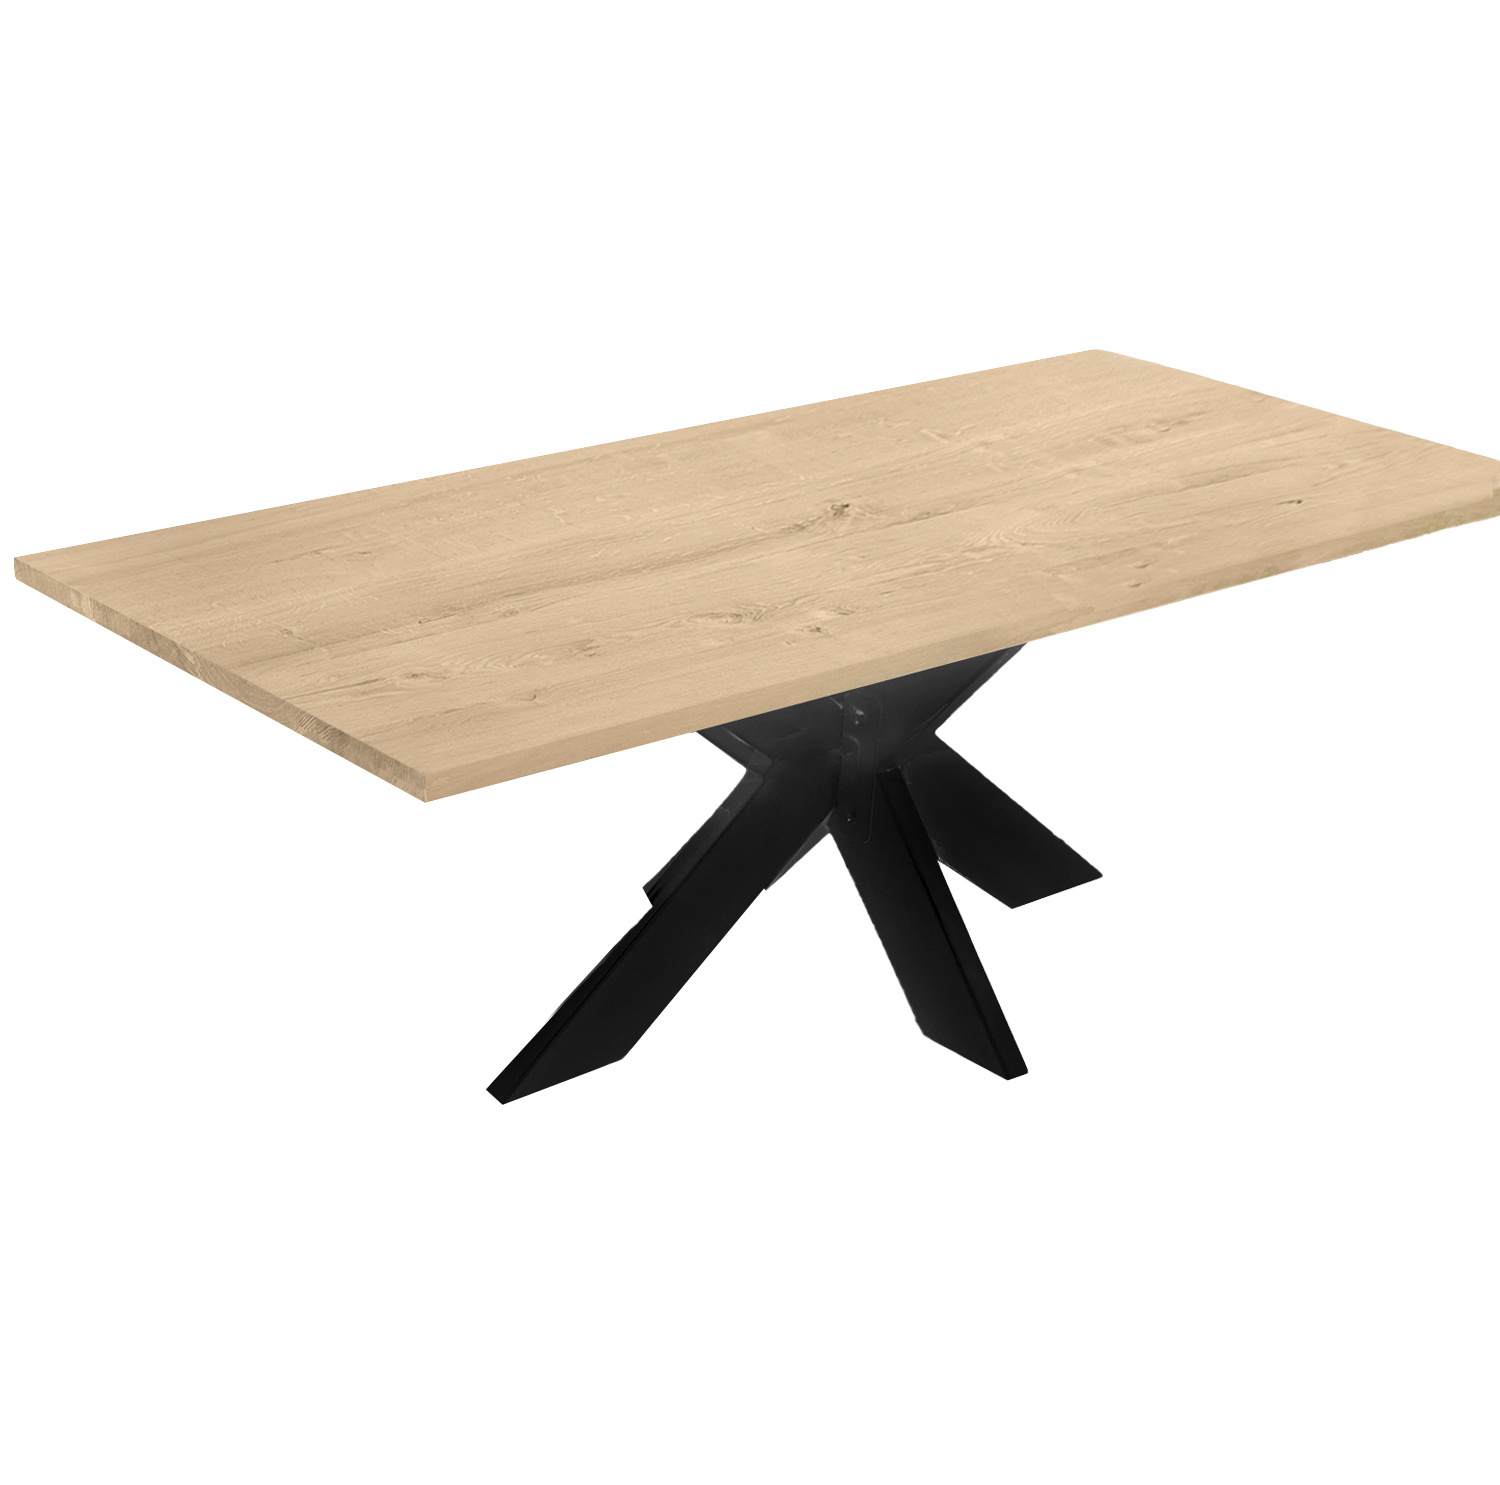  Eiken tafelblad - 4 cm dik (1-laag) - Diverse afmetingen - extra rustiek Europees eikenhout - met extra brede lamellen (circa 14-20 cm) - verlijmd kd 8-12%